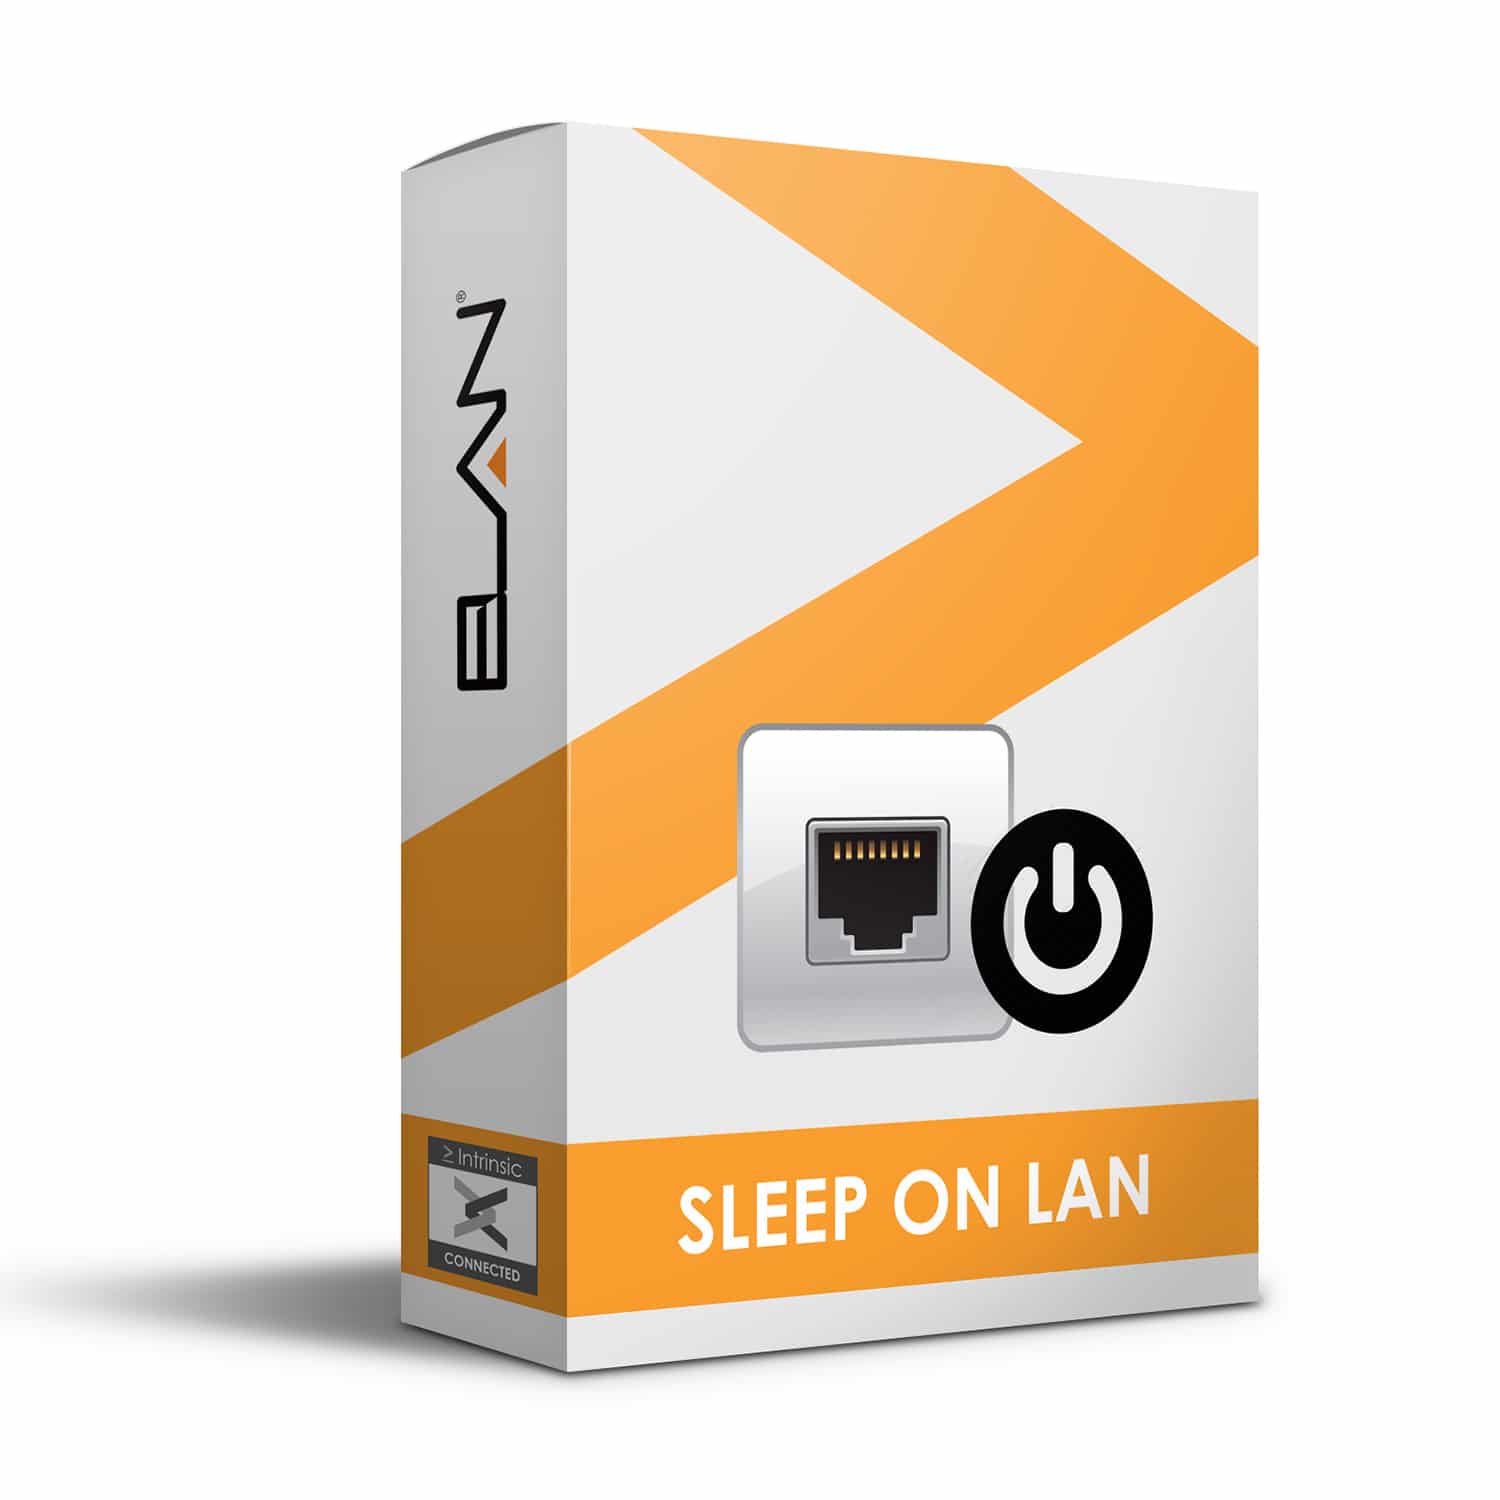 Sleep on LAN Driver for ELAN